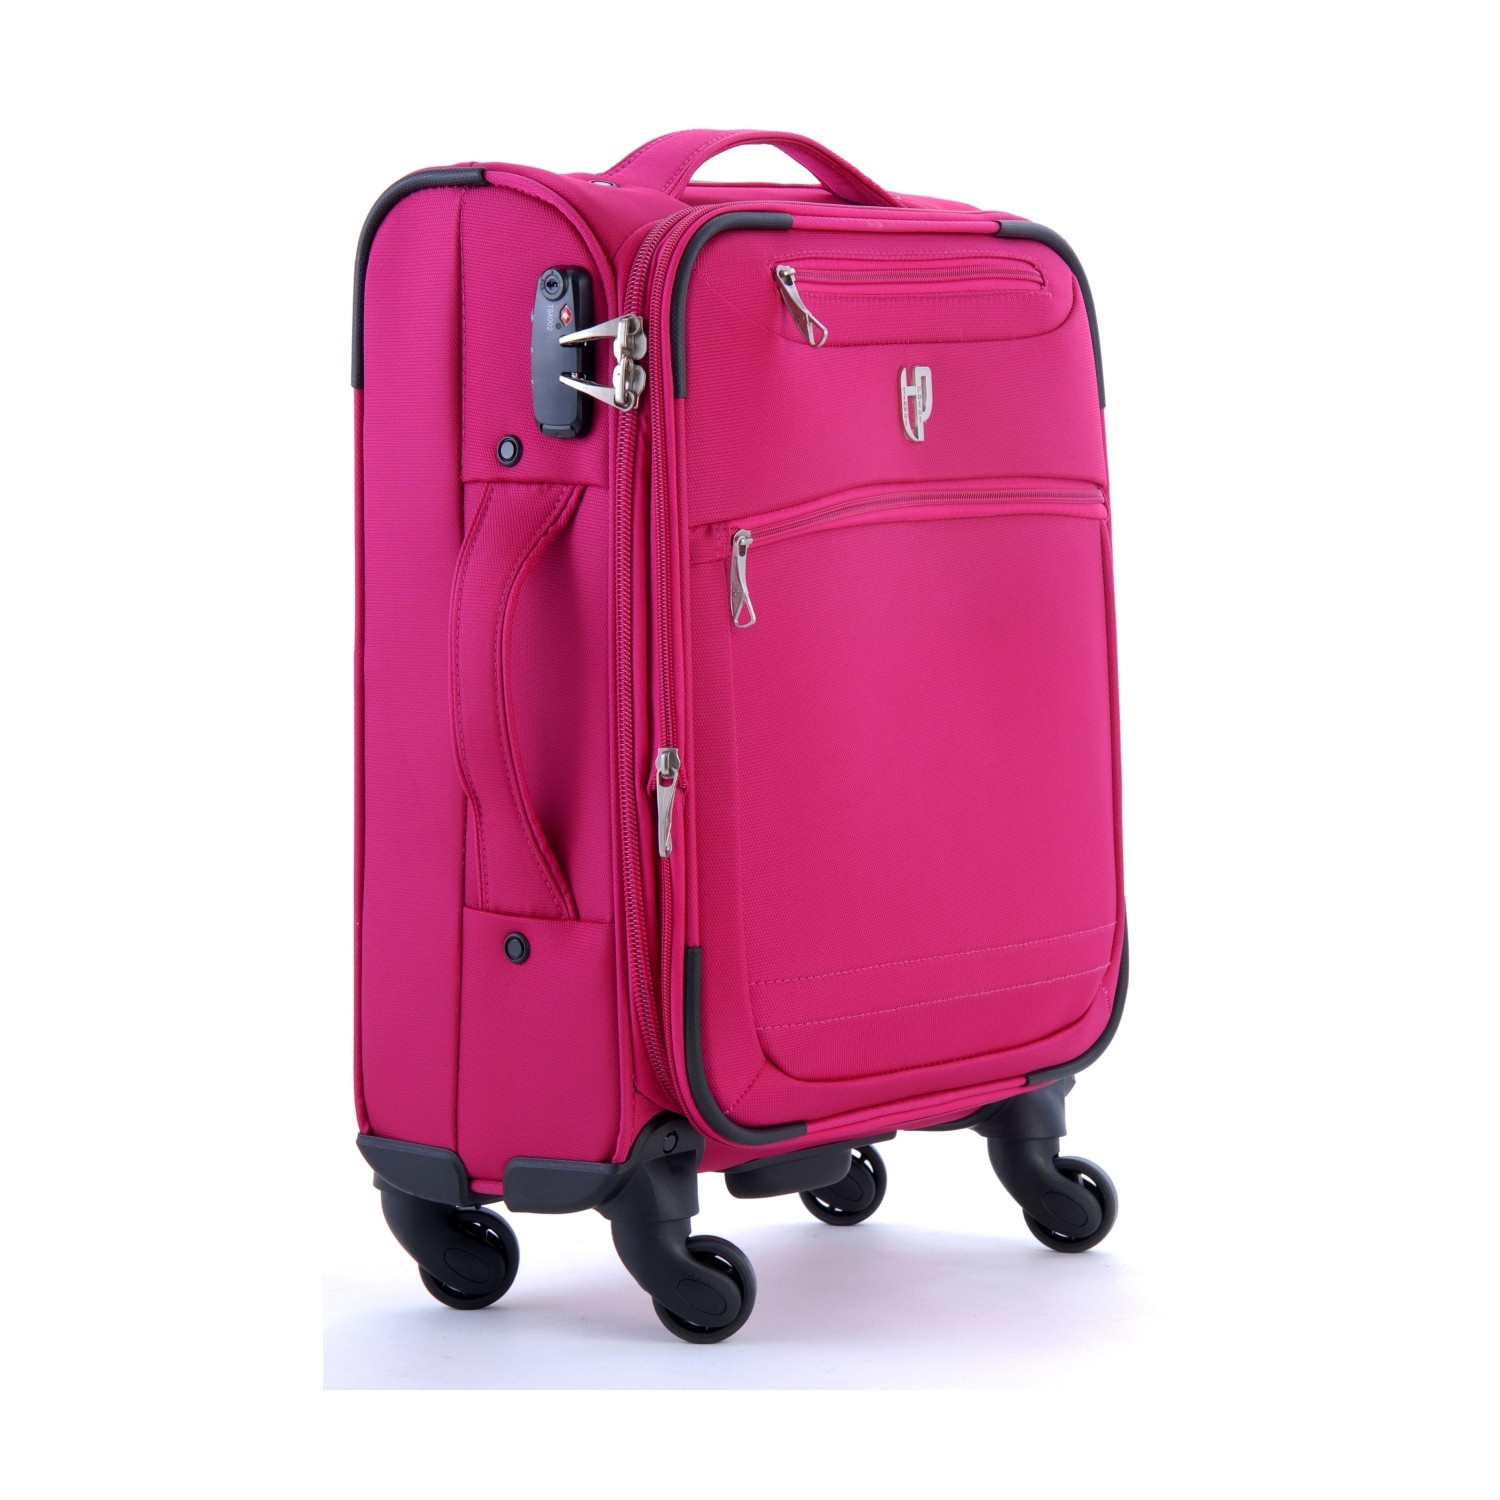 ccs travel line suitcase